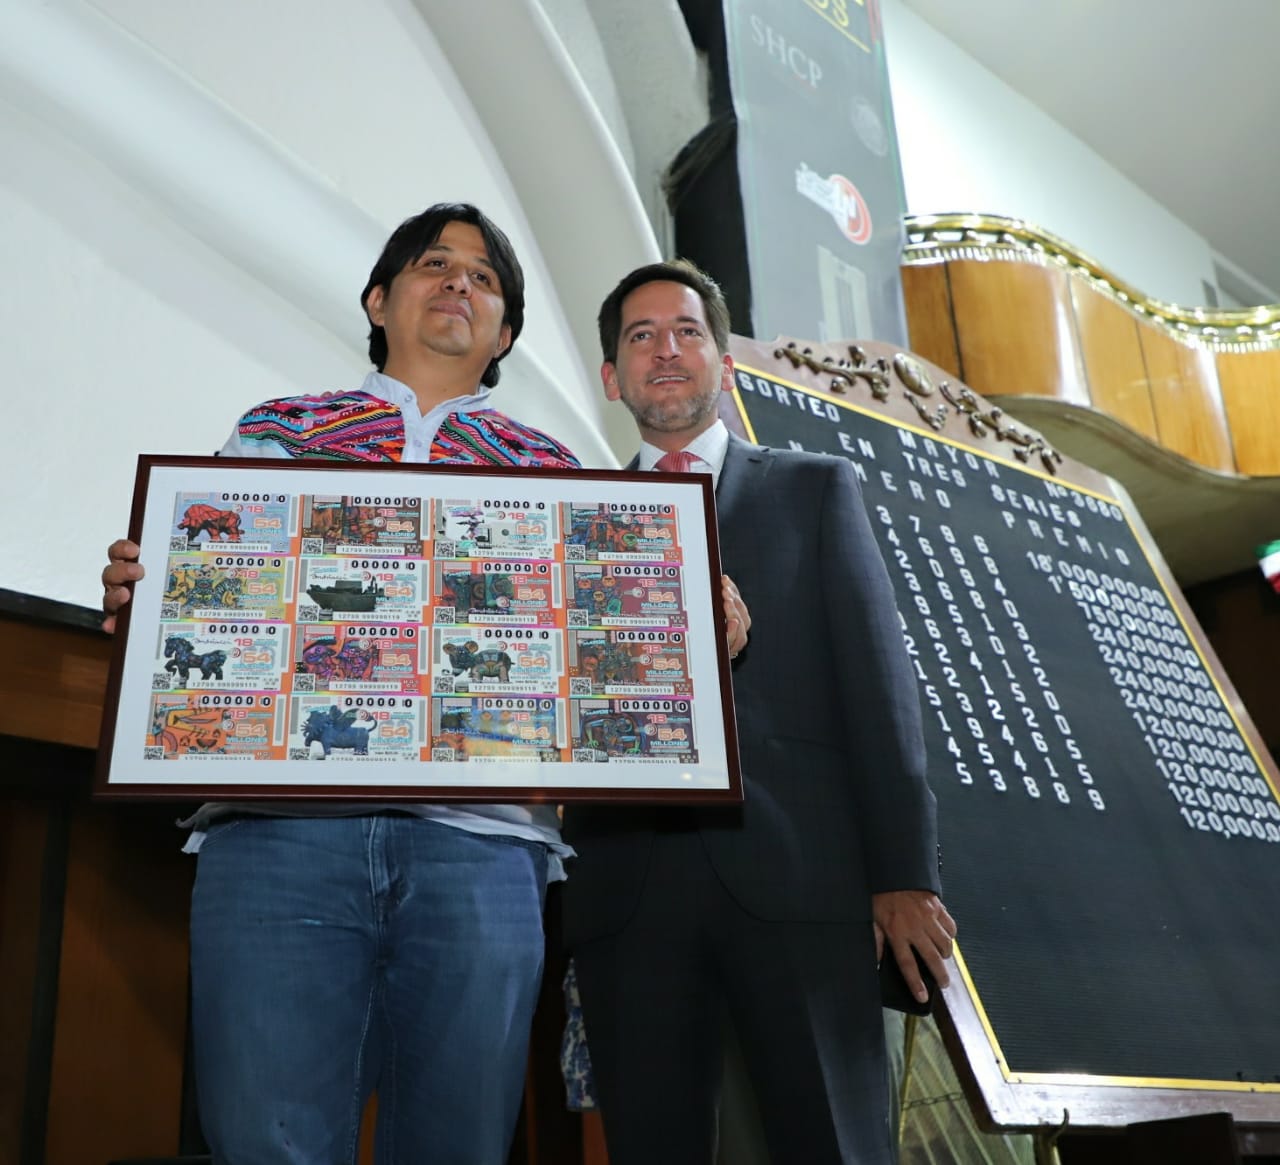 La Lotería Nacional para la Asistencia Pública (LOTENAL) dedicó su Sorteo Mayor No. 3680 a la trayectoria artística del artista Fernando Andriacci